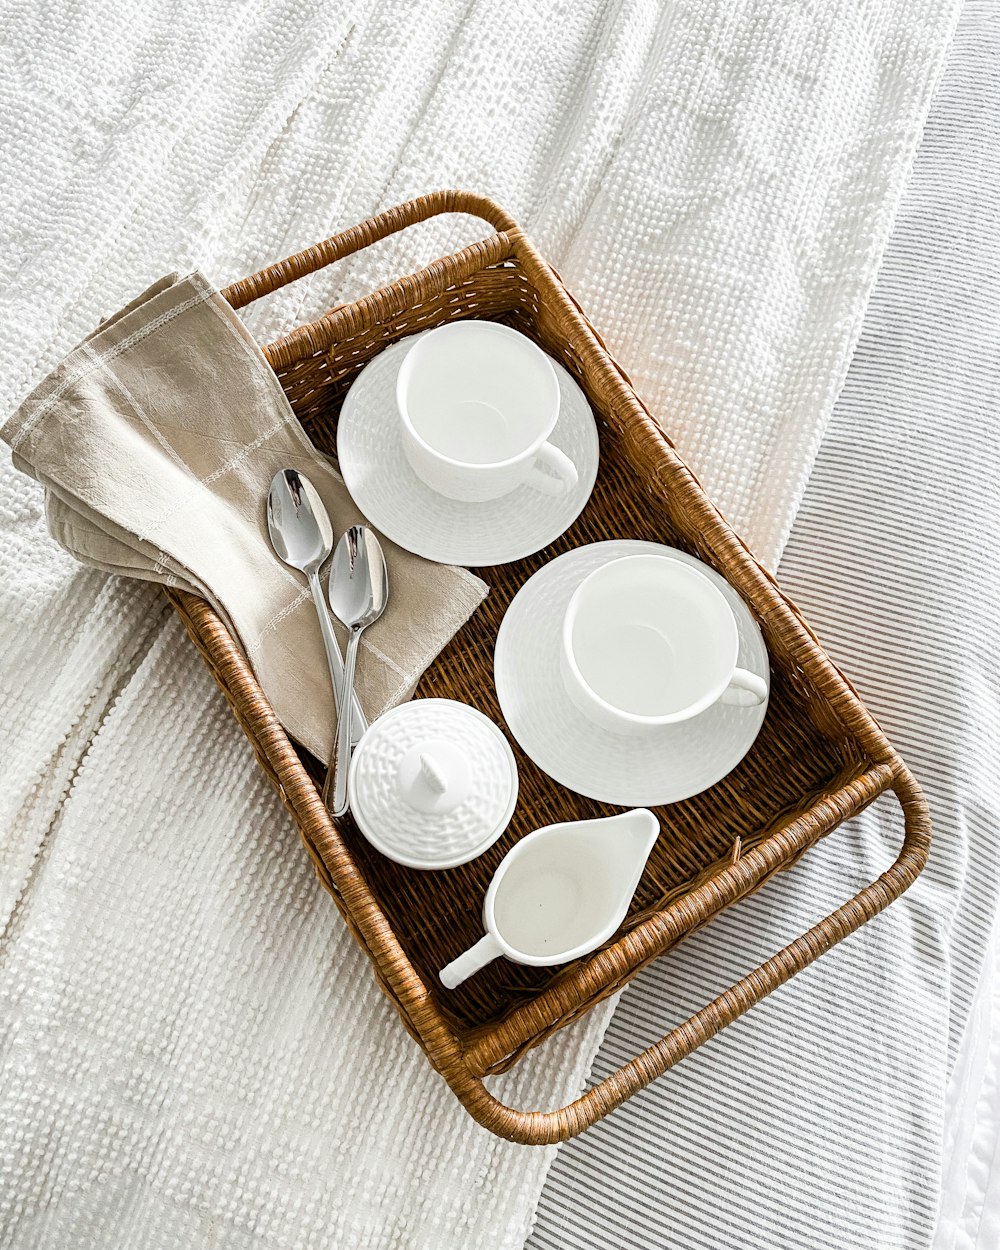 tazas de cerámica blanca en cesta tejida marrón